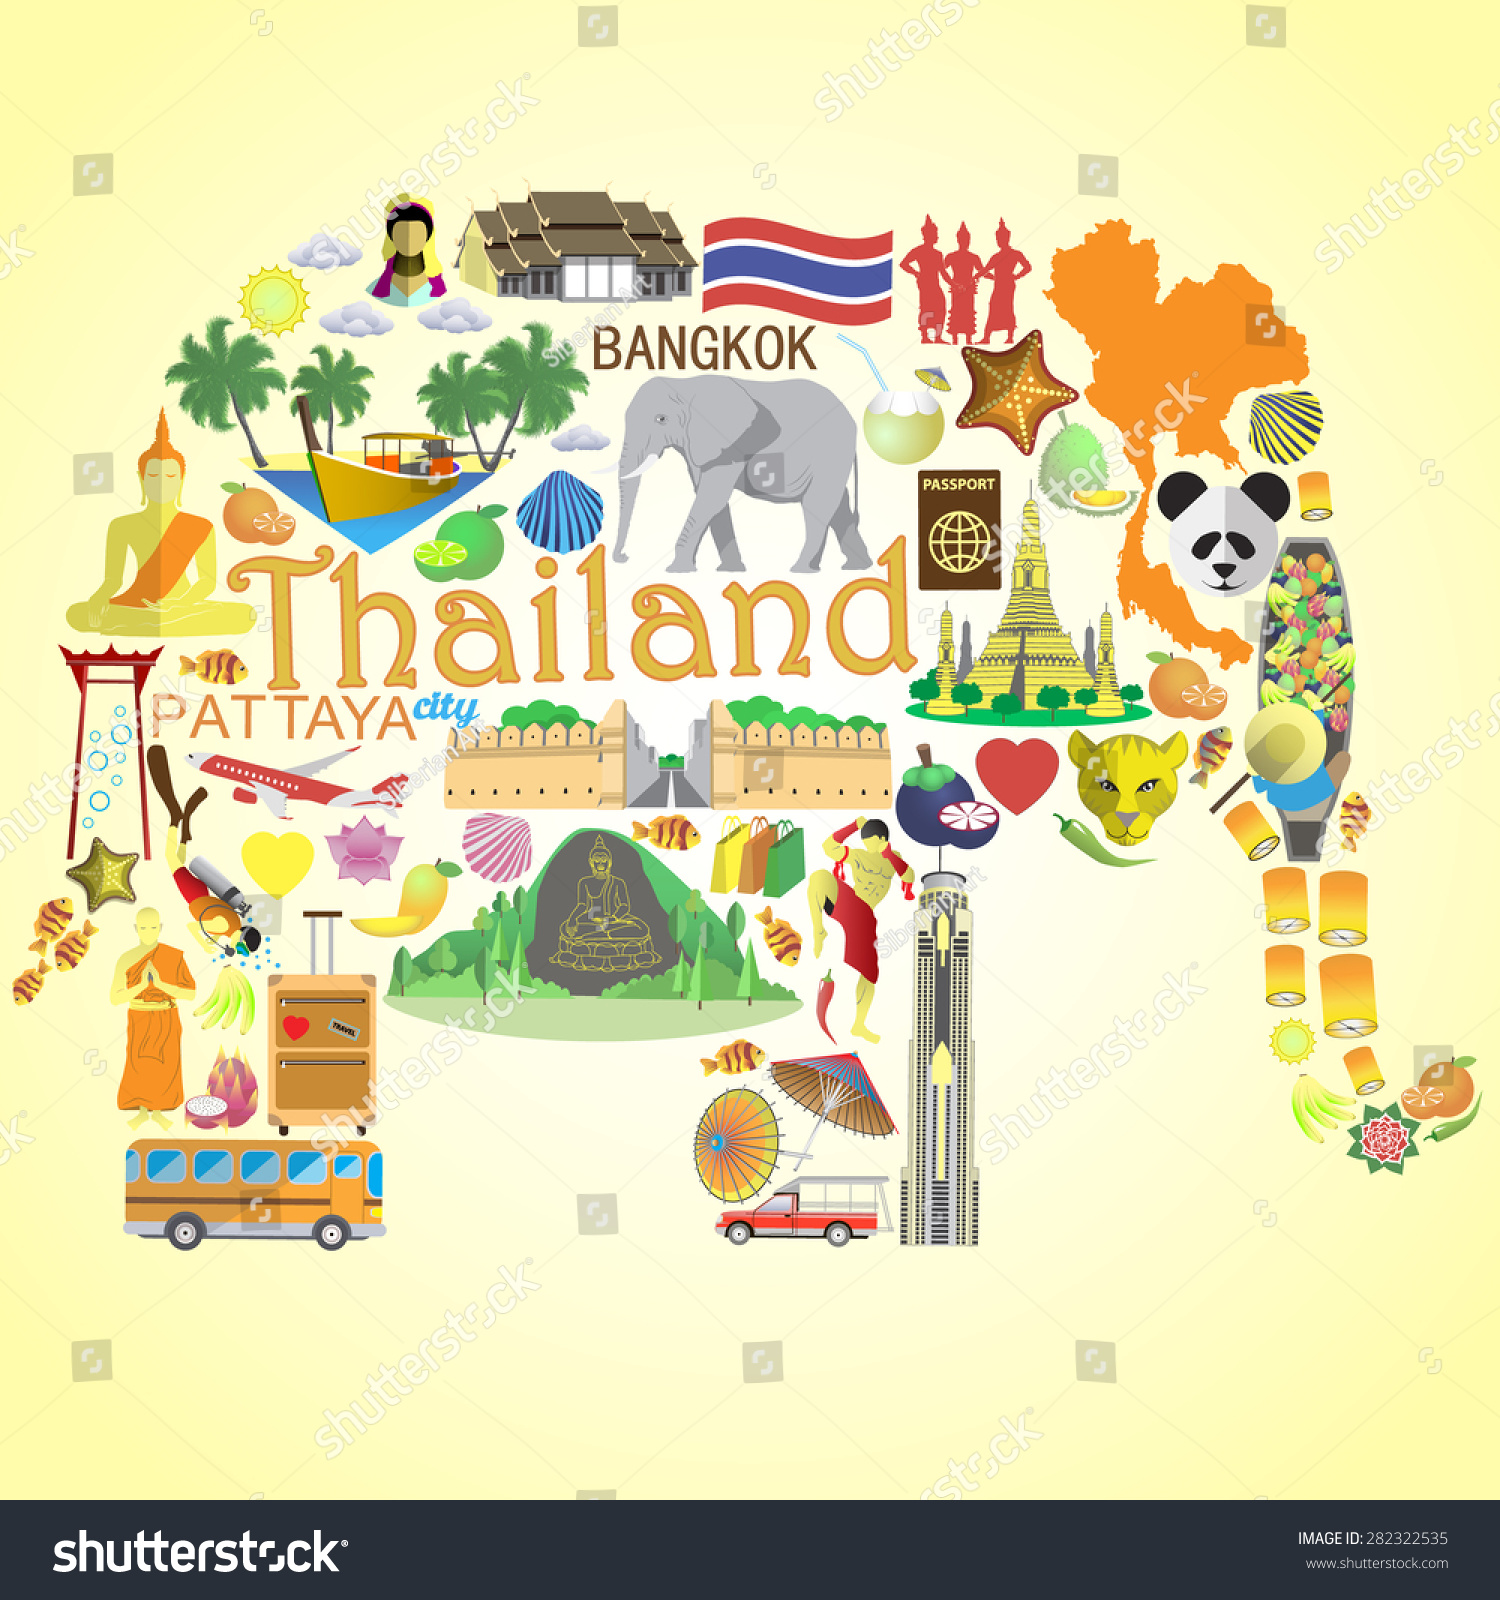 Symbols In Thai 18